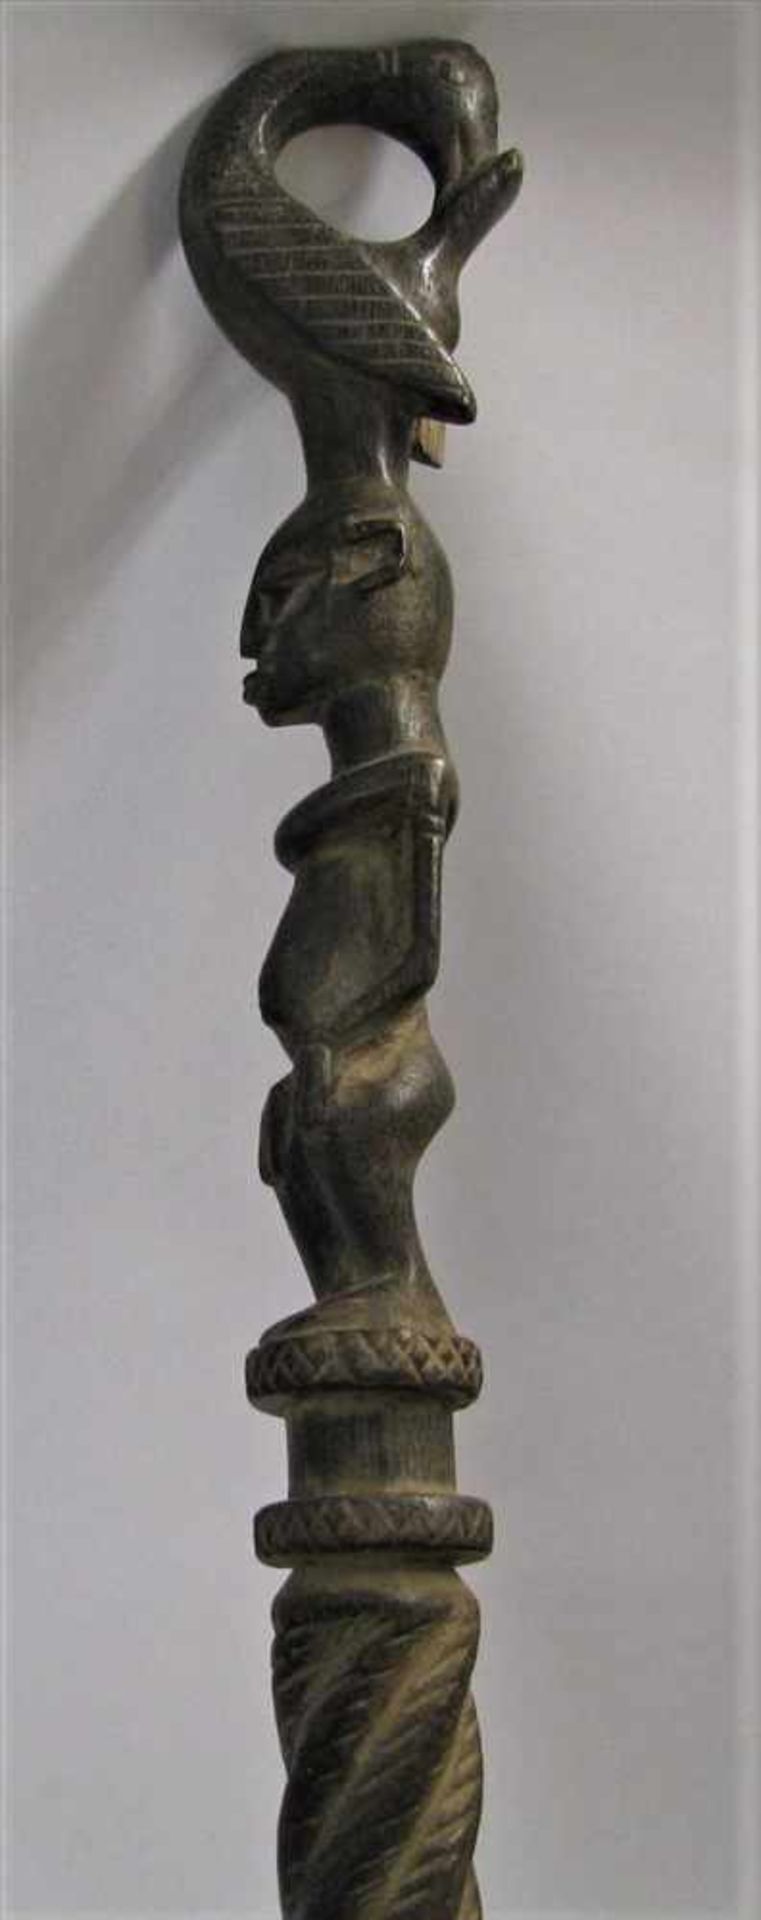 Zeremonienstab, Afrika, Holz beschnitzt, Griff als weibliche Figur mit Vogel, 1 x best., h 91 cm,